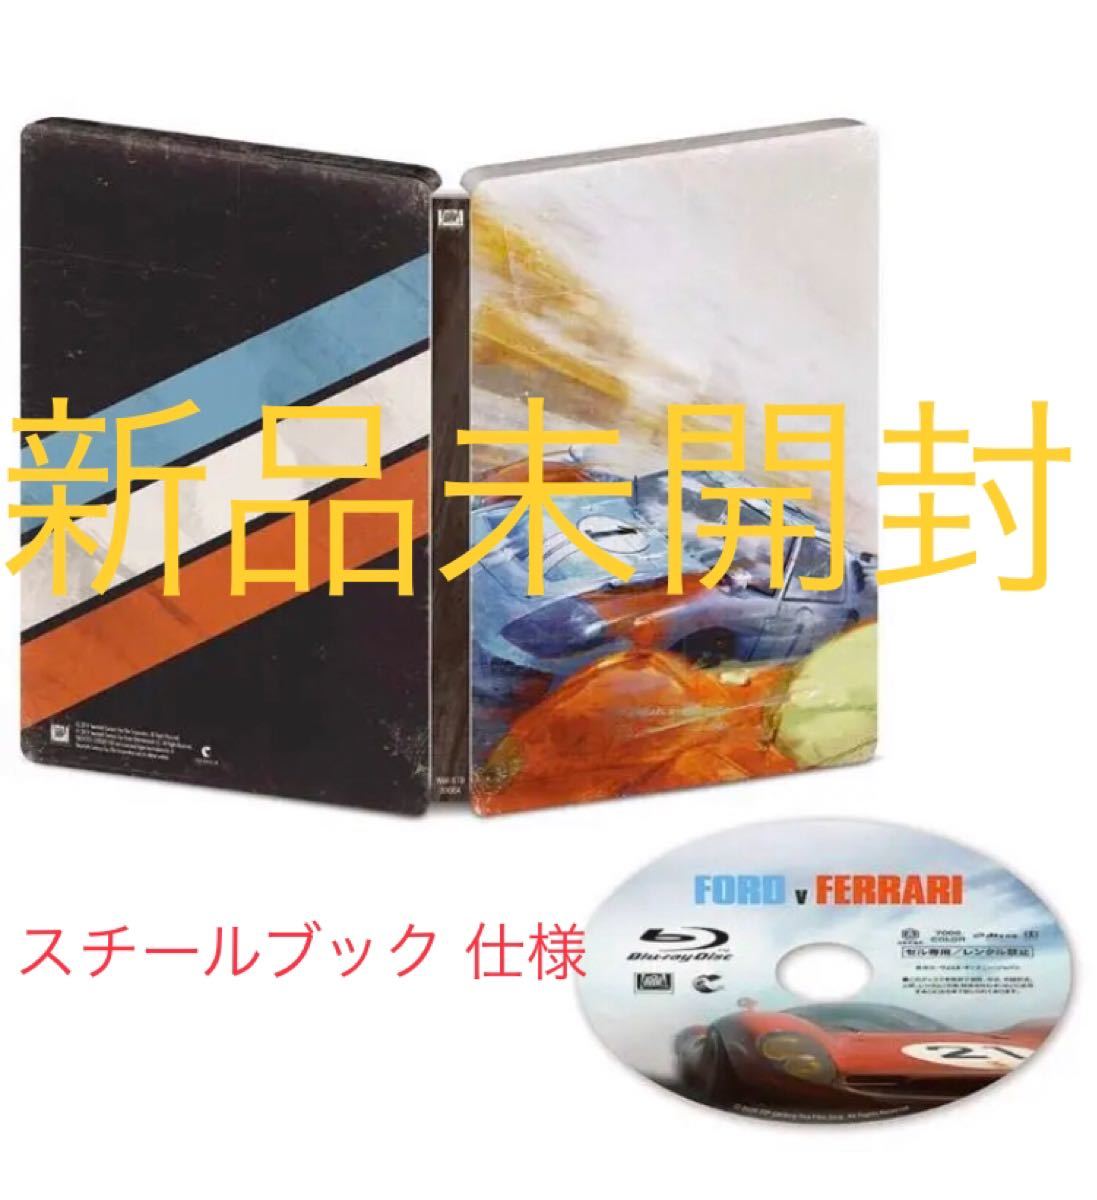 【Amazon.co.jp限定】フォードvsフェラーリ スチールブック Blu-ray 新品